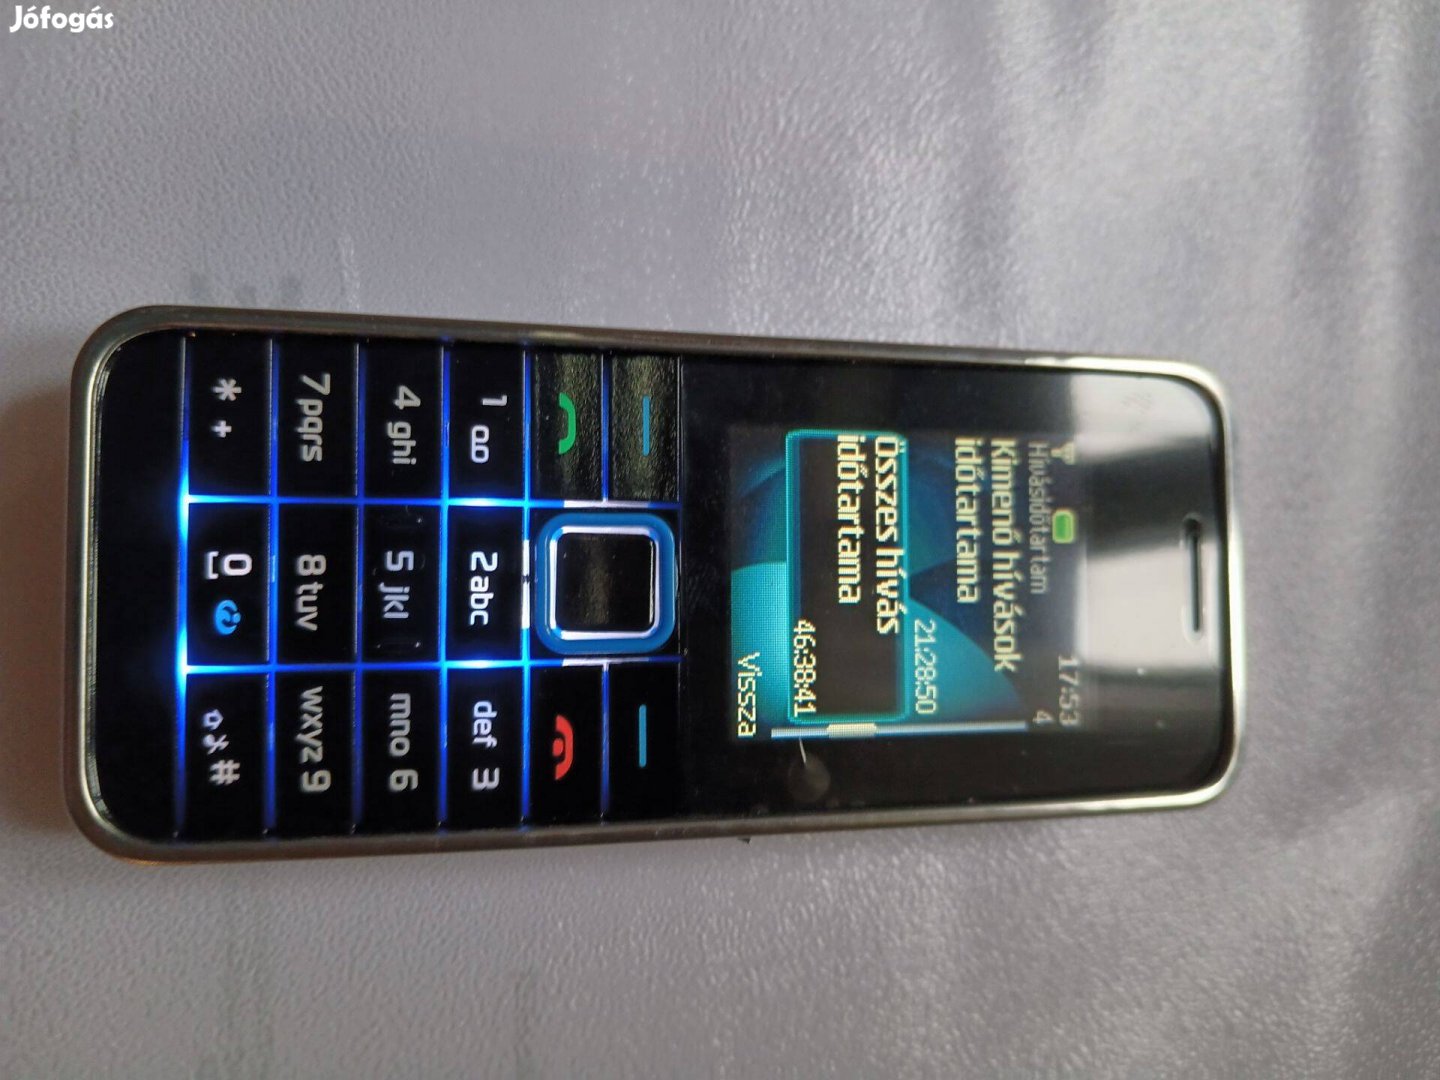 Nokia 3500c (Vodafone) szép állapotban eladó